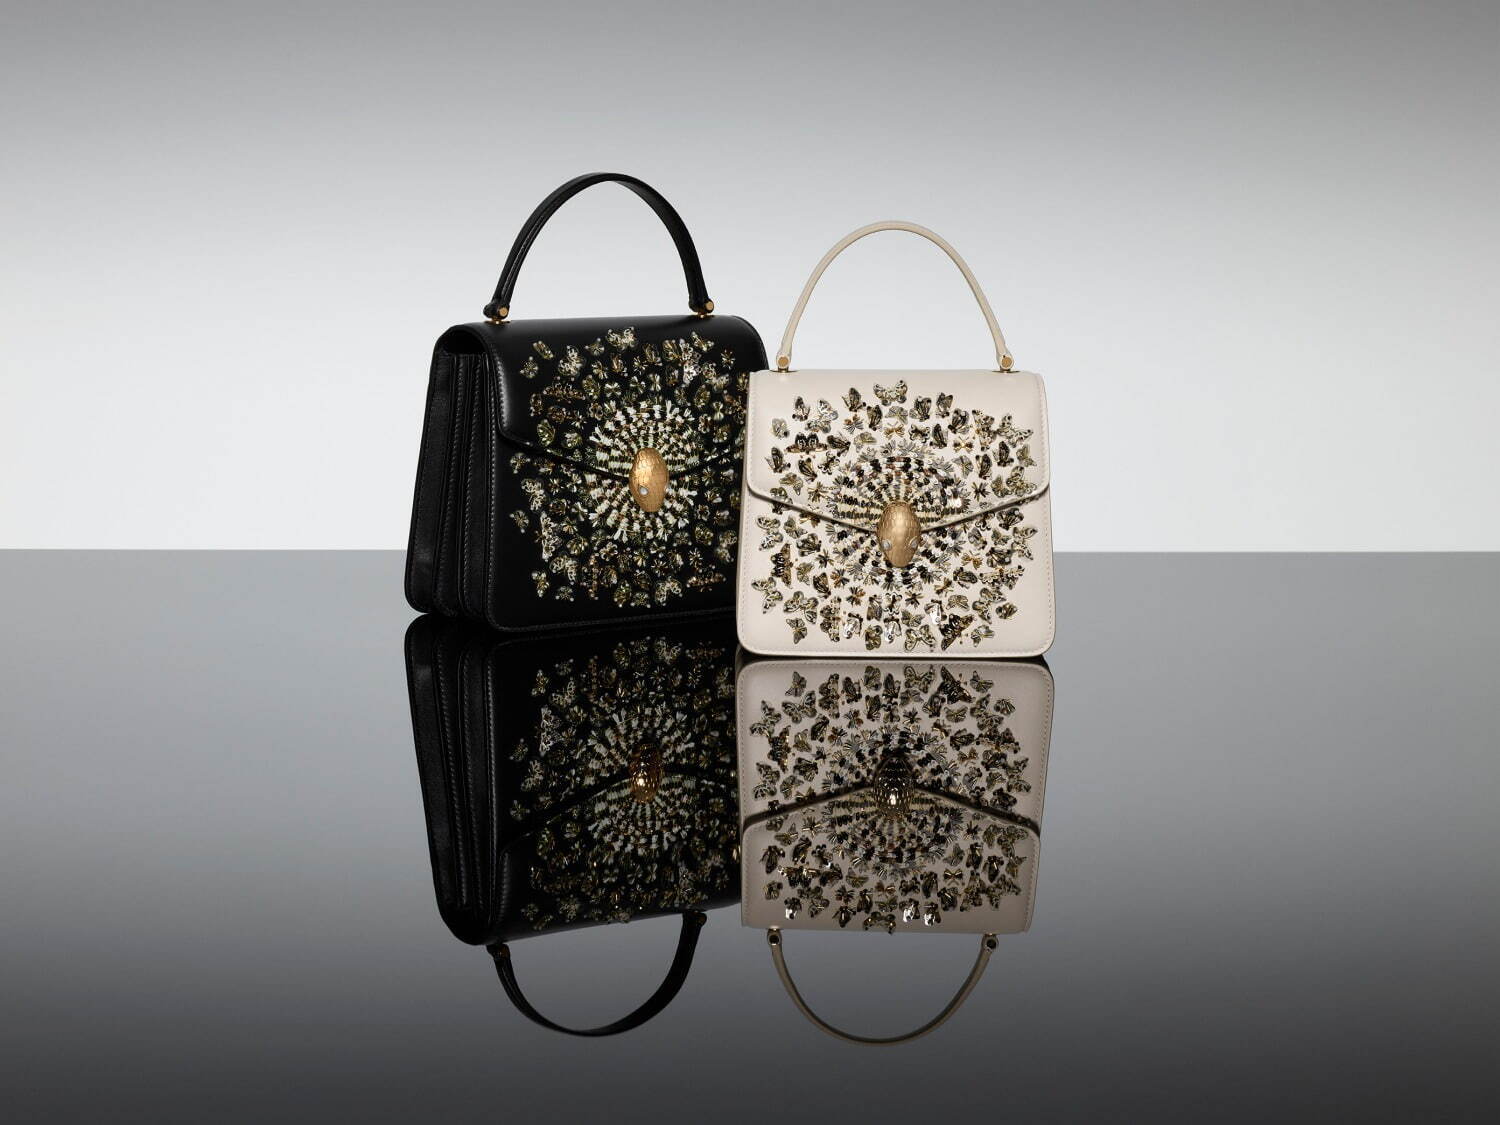 左から)「セルペンティ メタモーフォシス バッグ」1,485,000円、1,210,000円